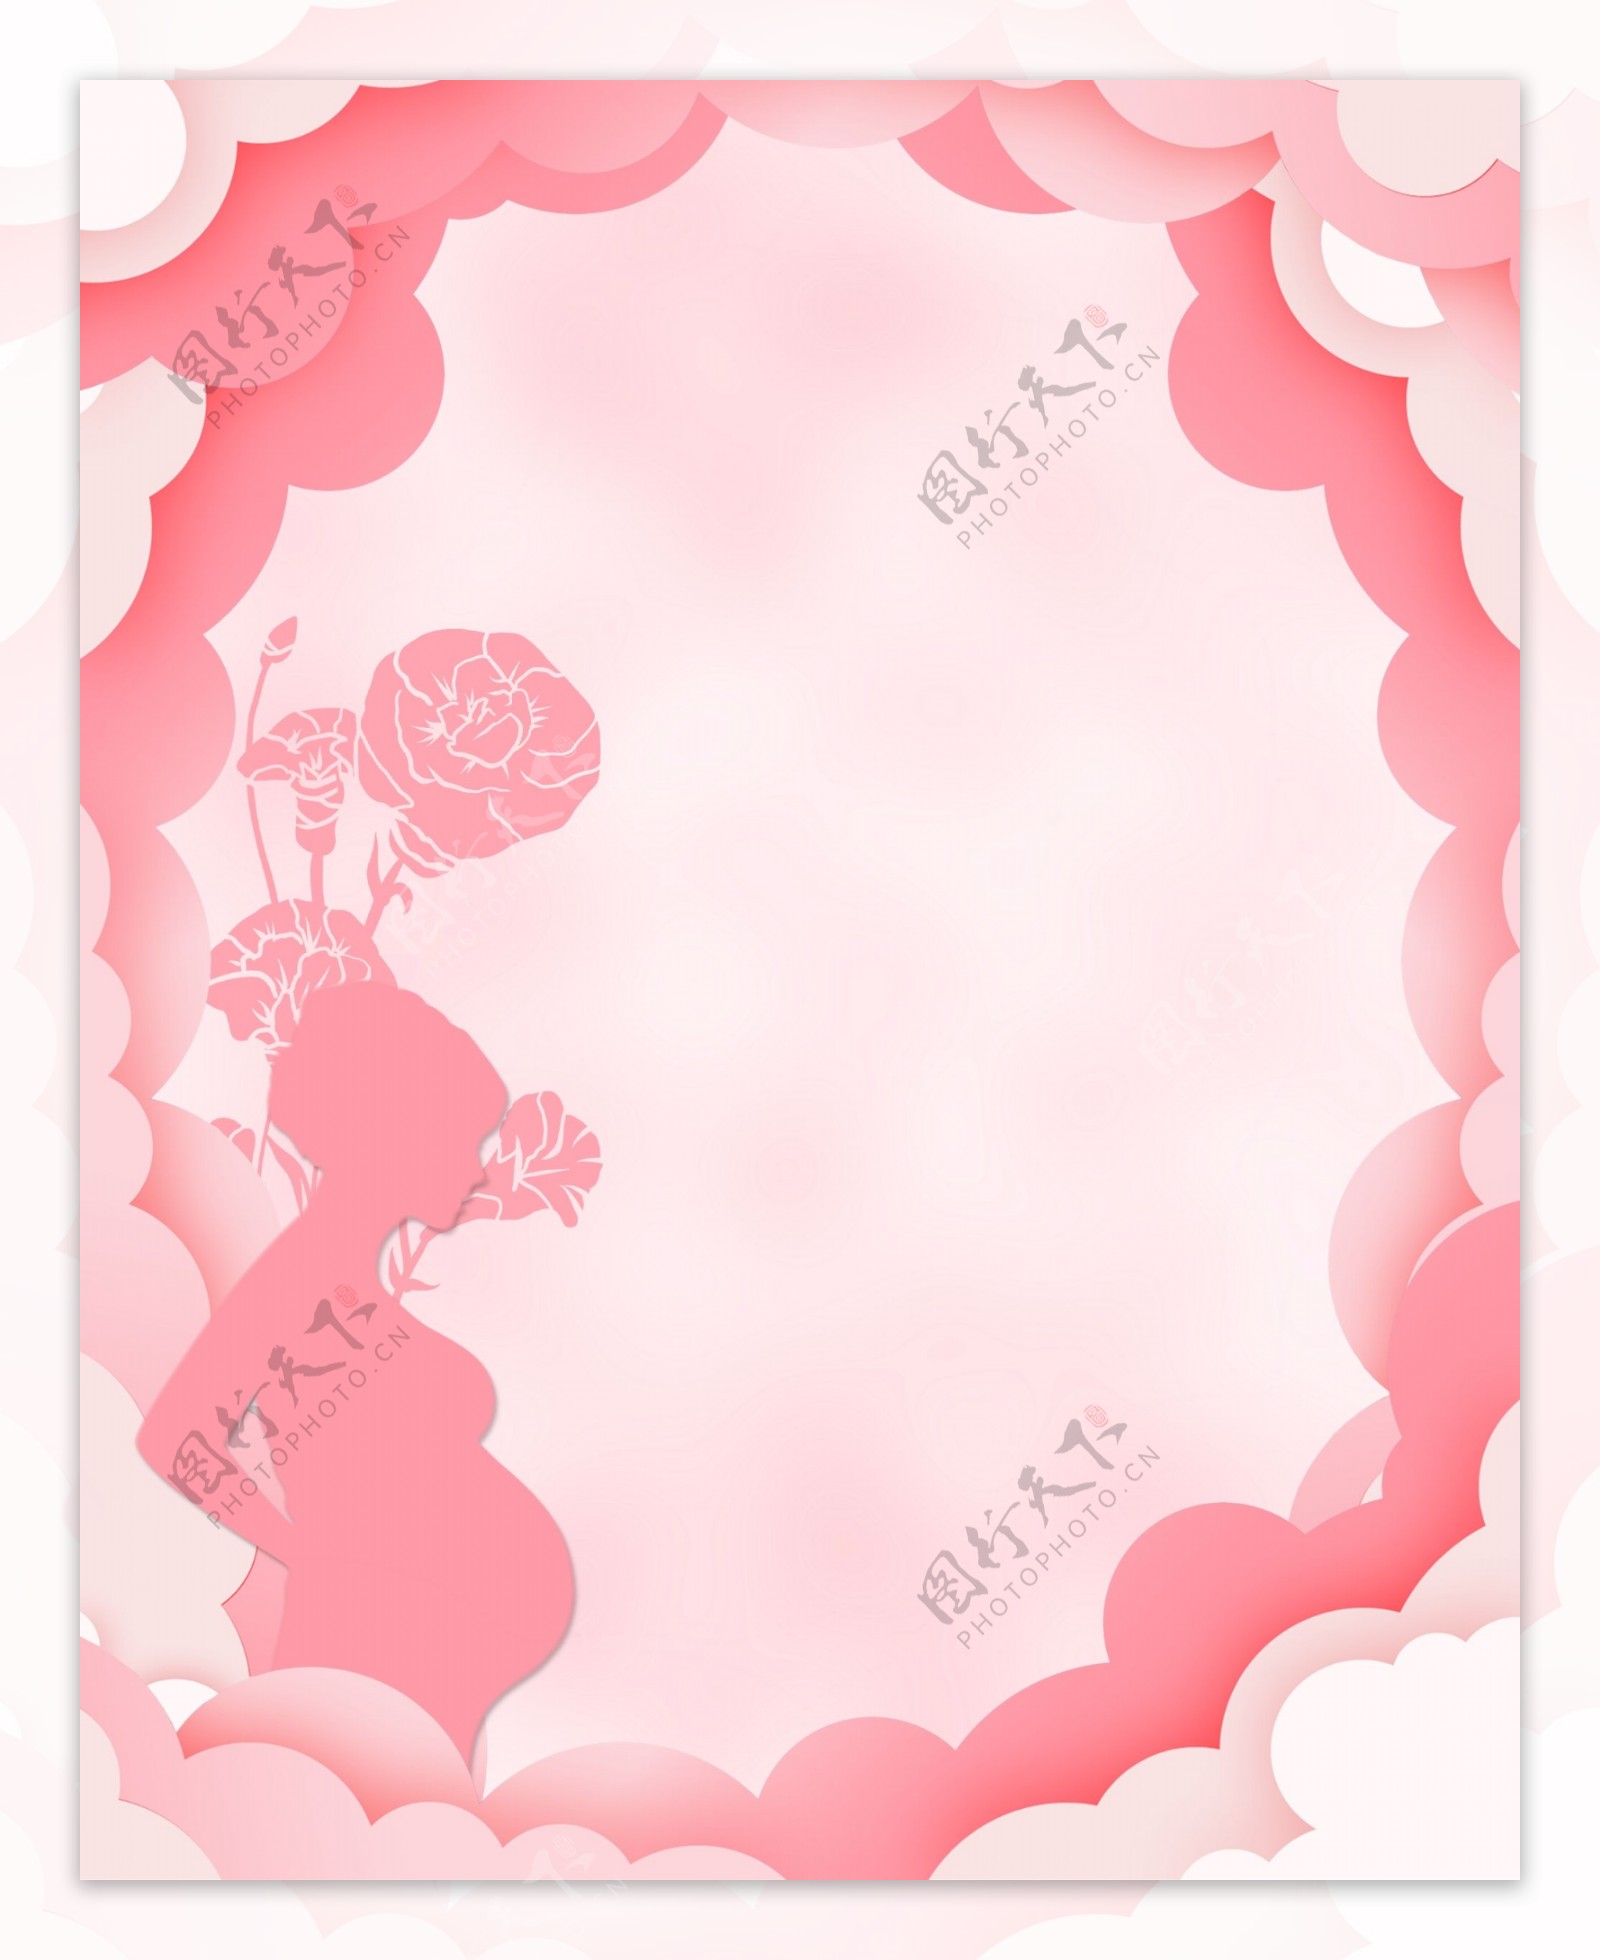 立体剪纸粉色母亲节康乃馨背景